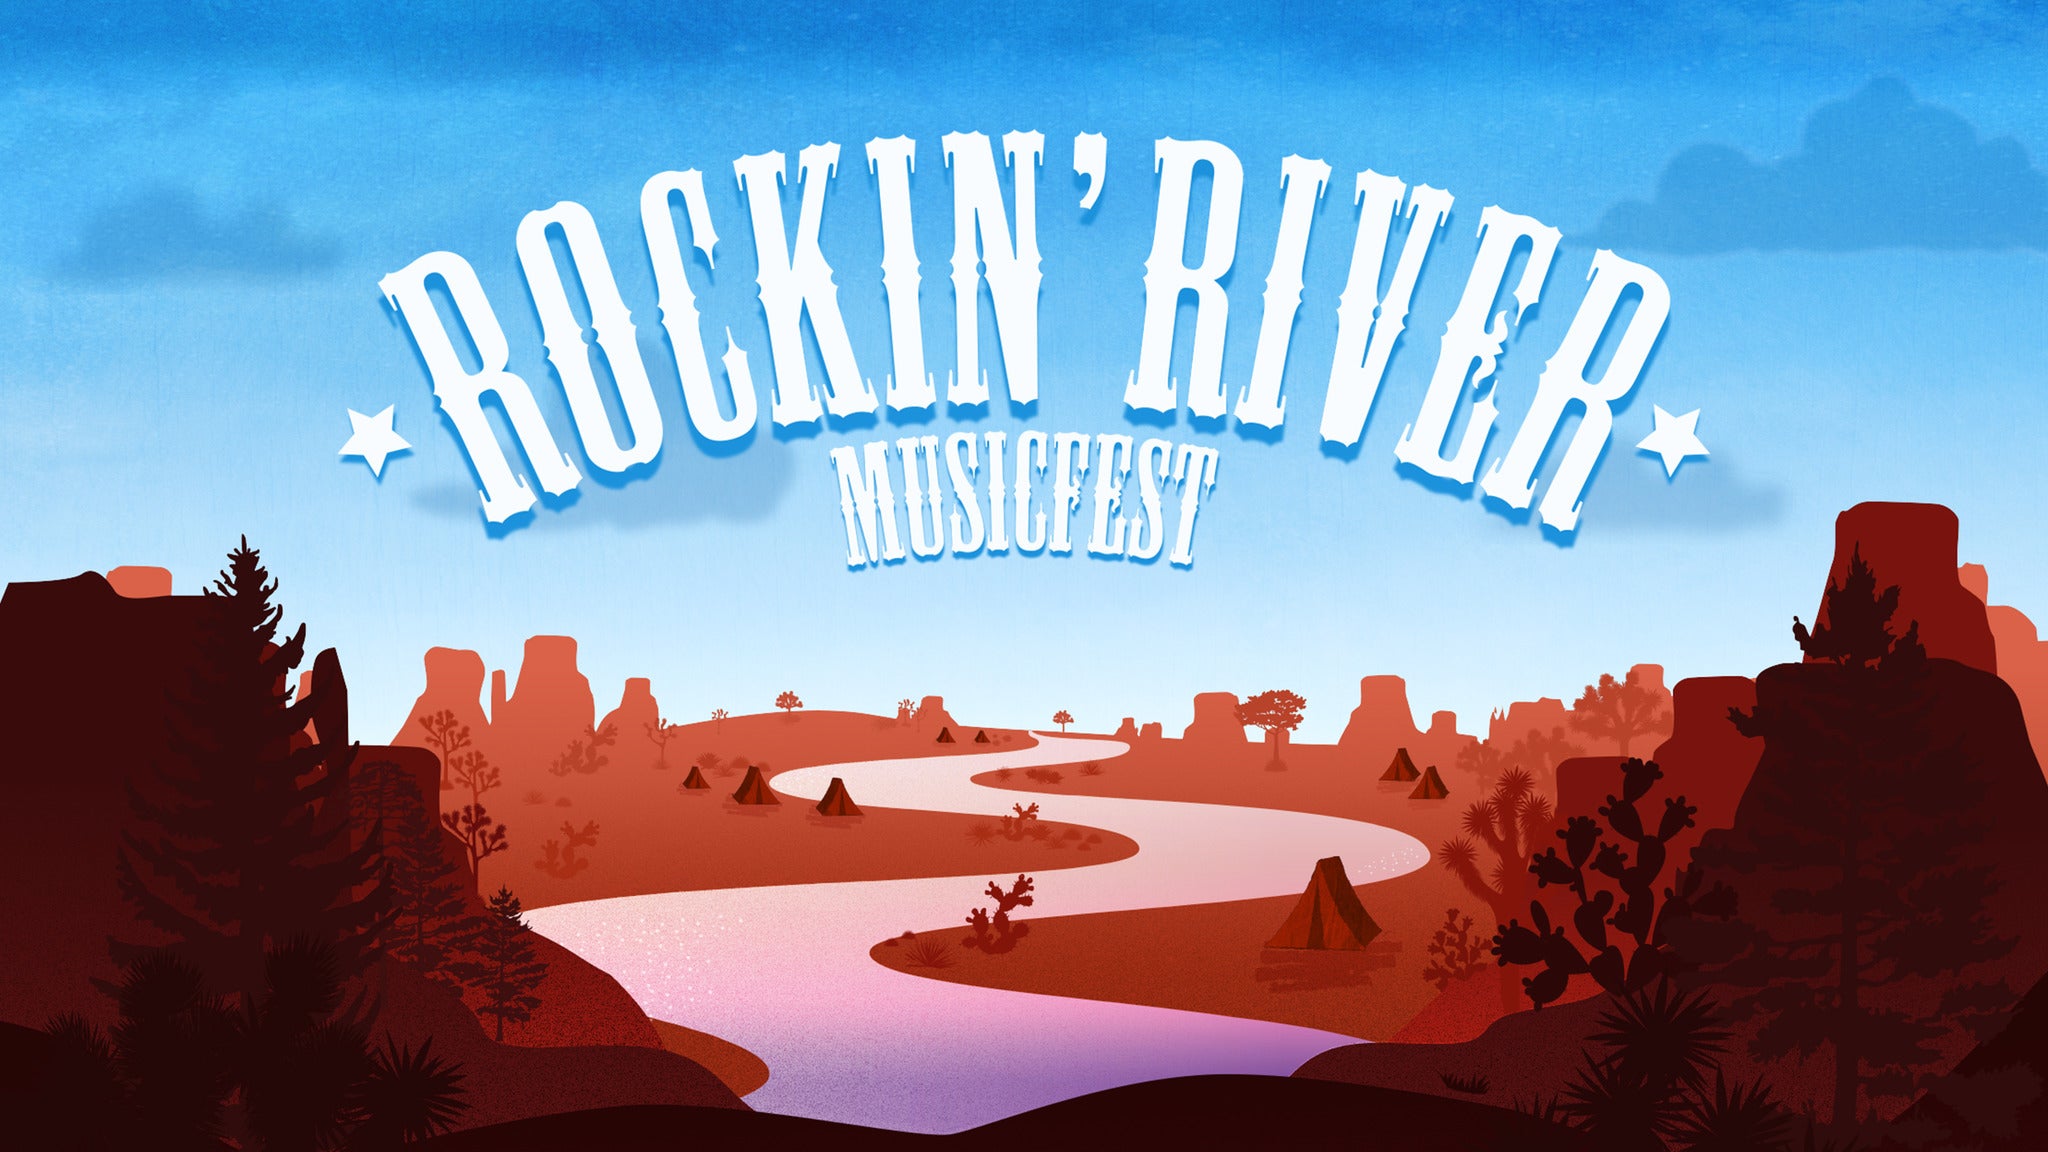 Rockin River Music Fest presale information on freepresalepasswords.com